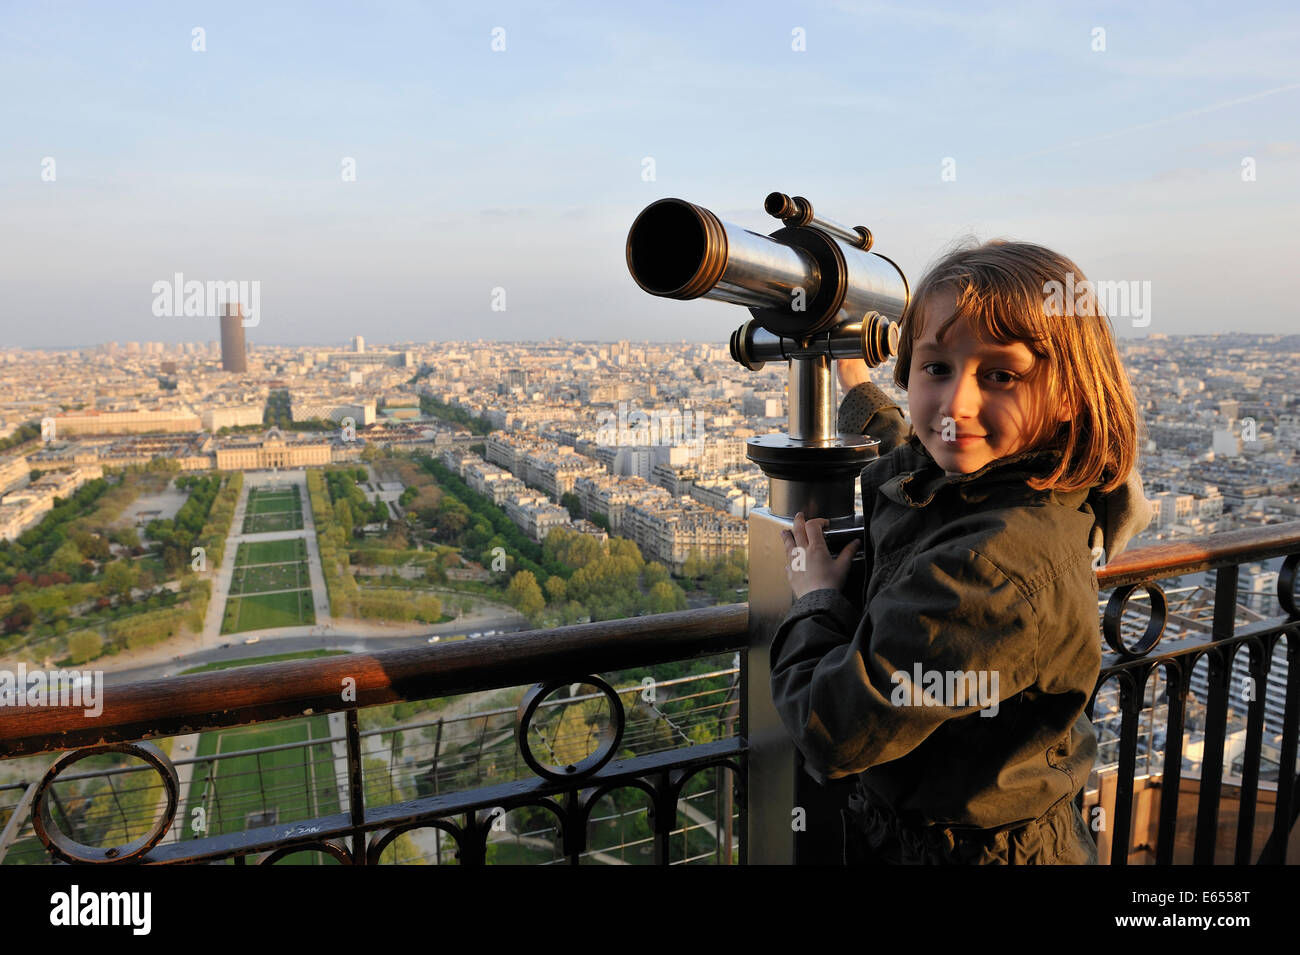 Junge Mädchen an der Spitze der Eiffelturm, Paris, Frankreich, Europa - mit Tour Montparnasse und dem Parc du Champ de Mars im Hintergrund Stockfoto